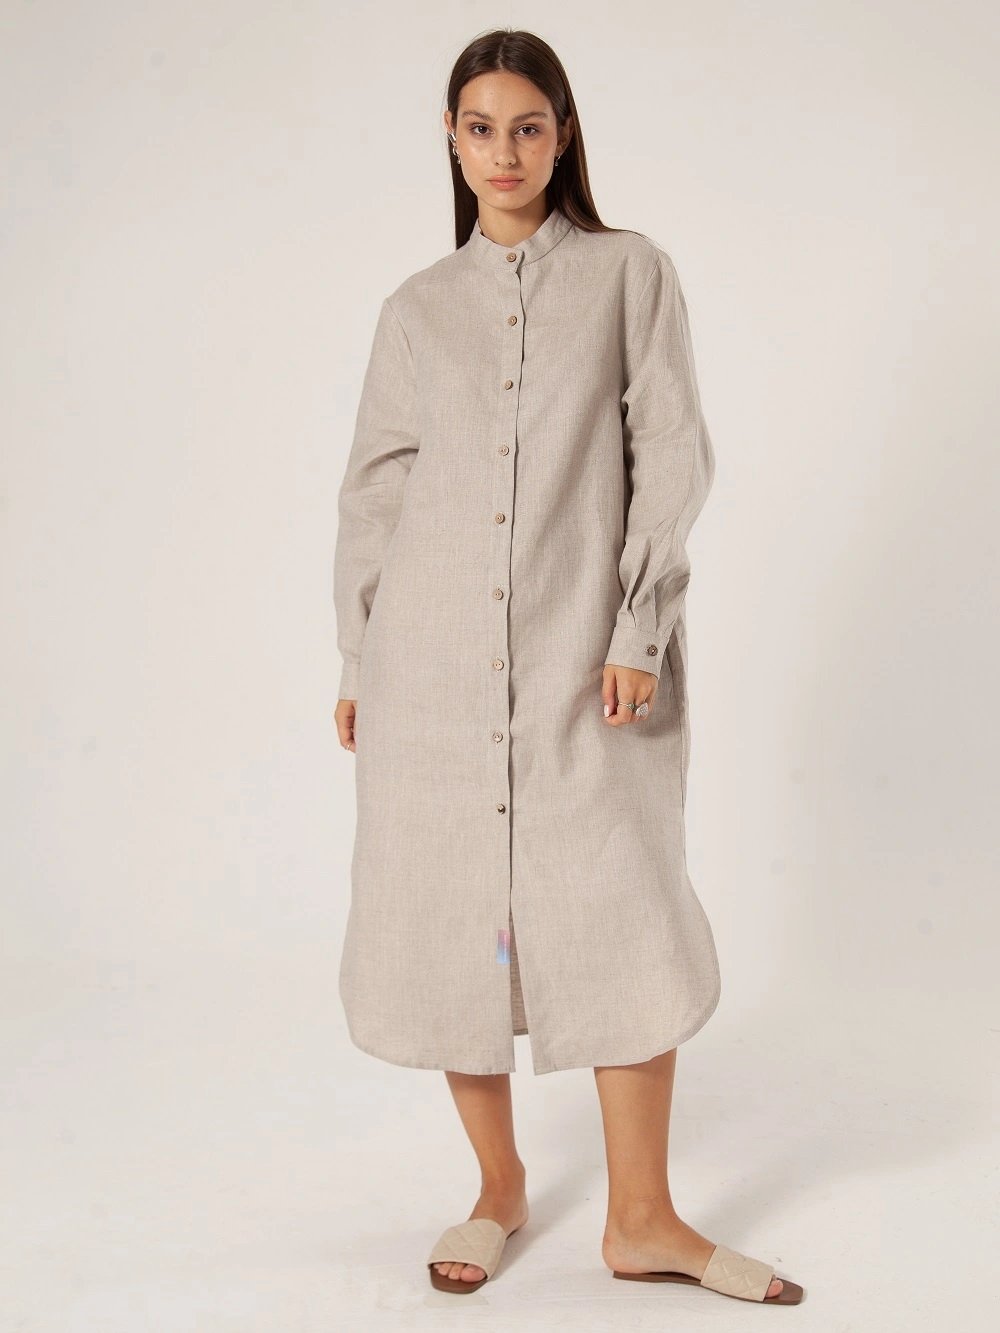 Льняная одежда — обязательный элемент модного гардероба